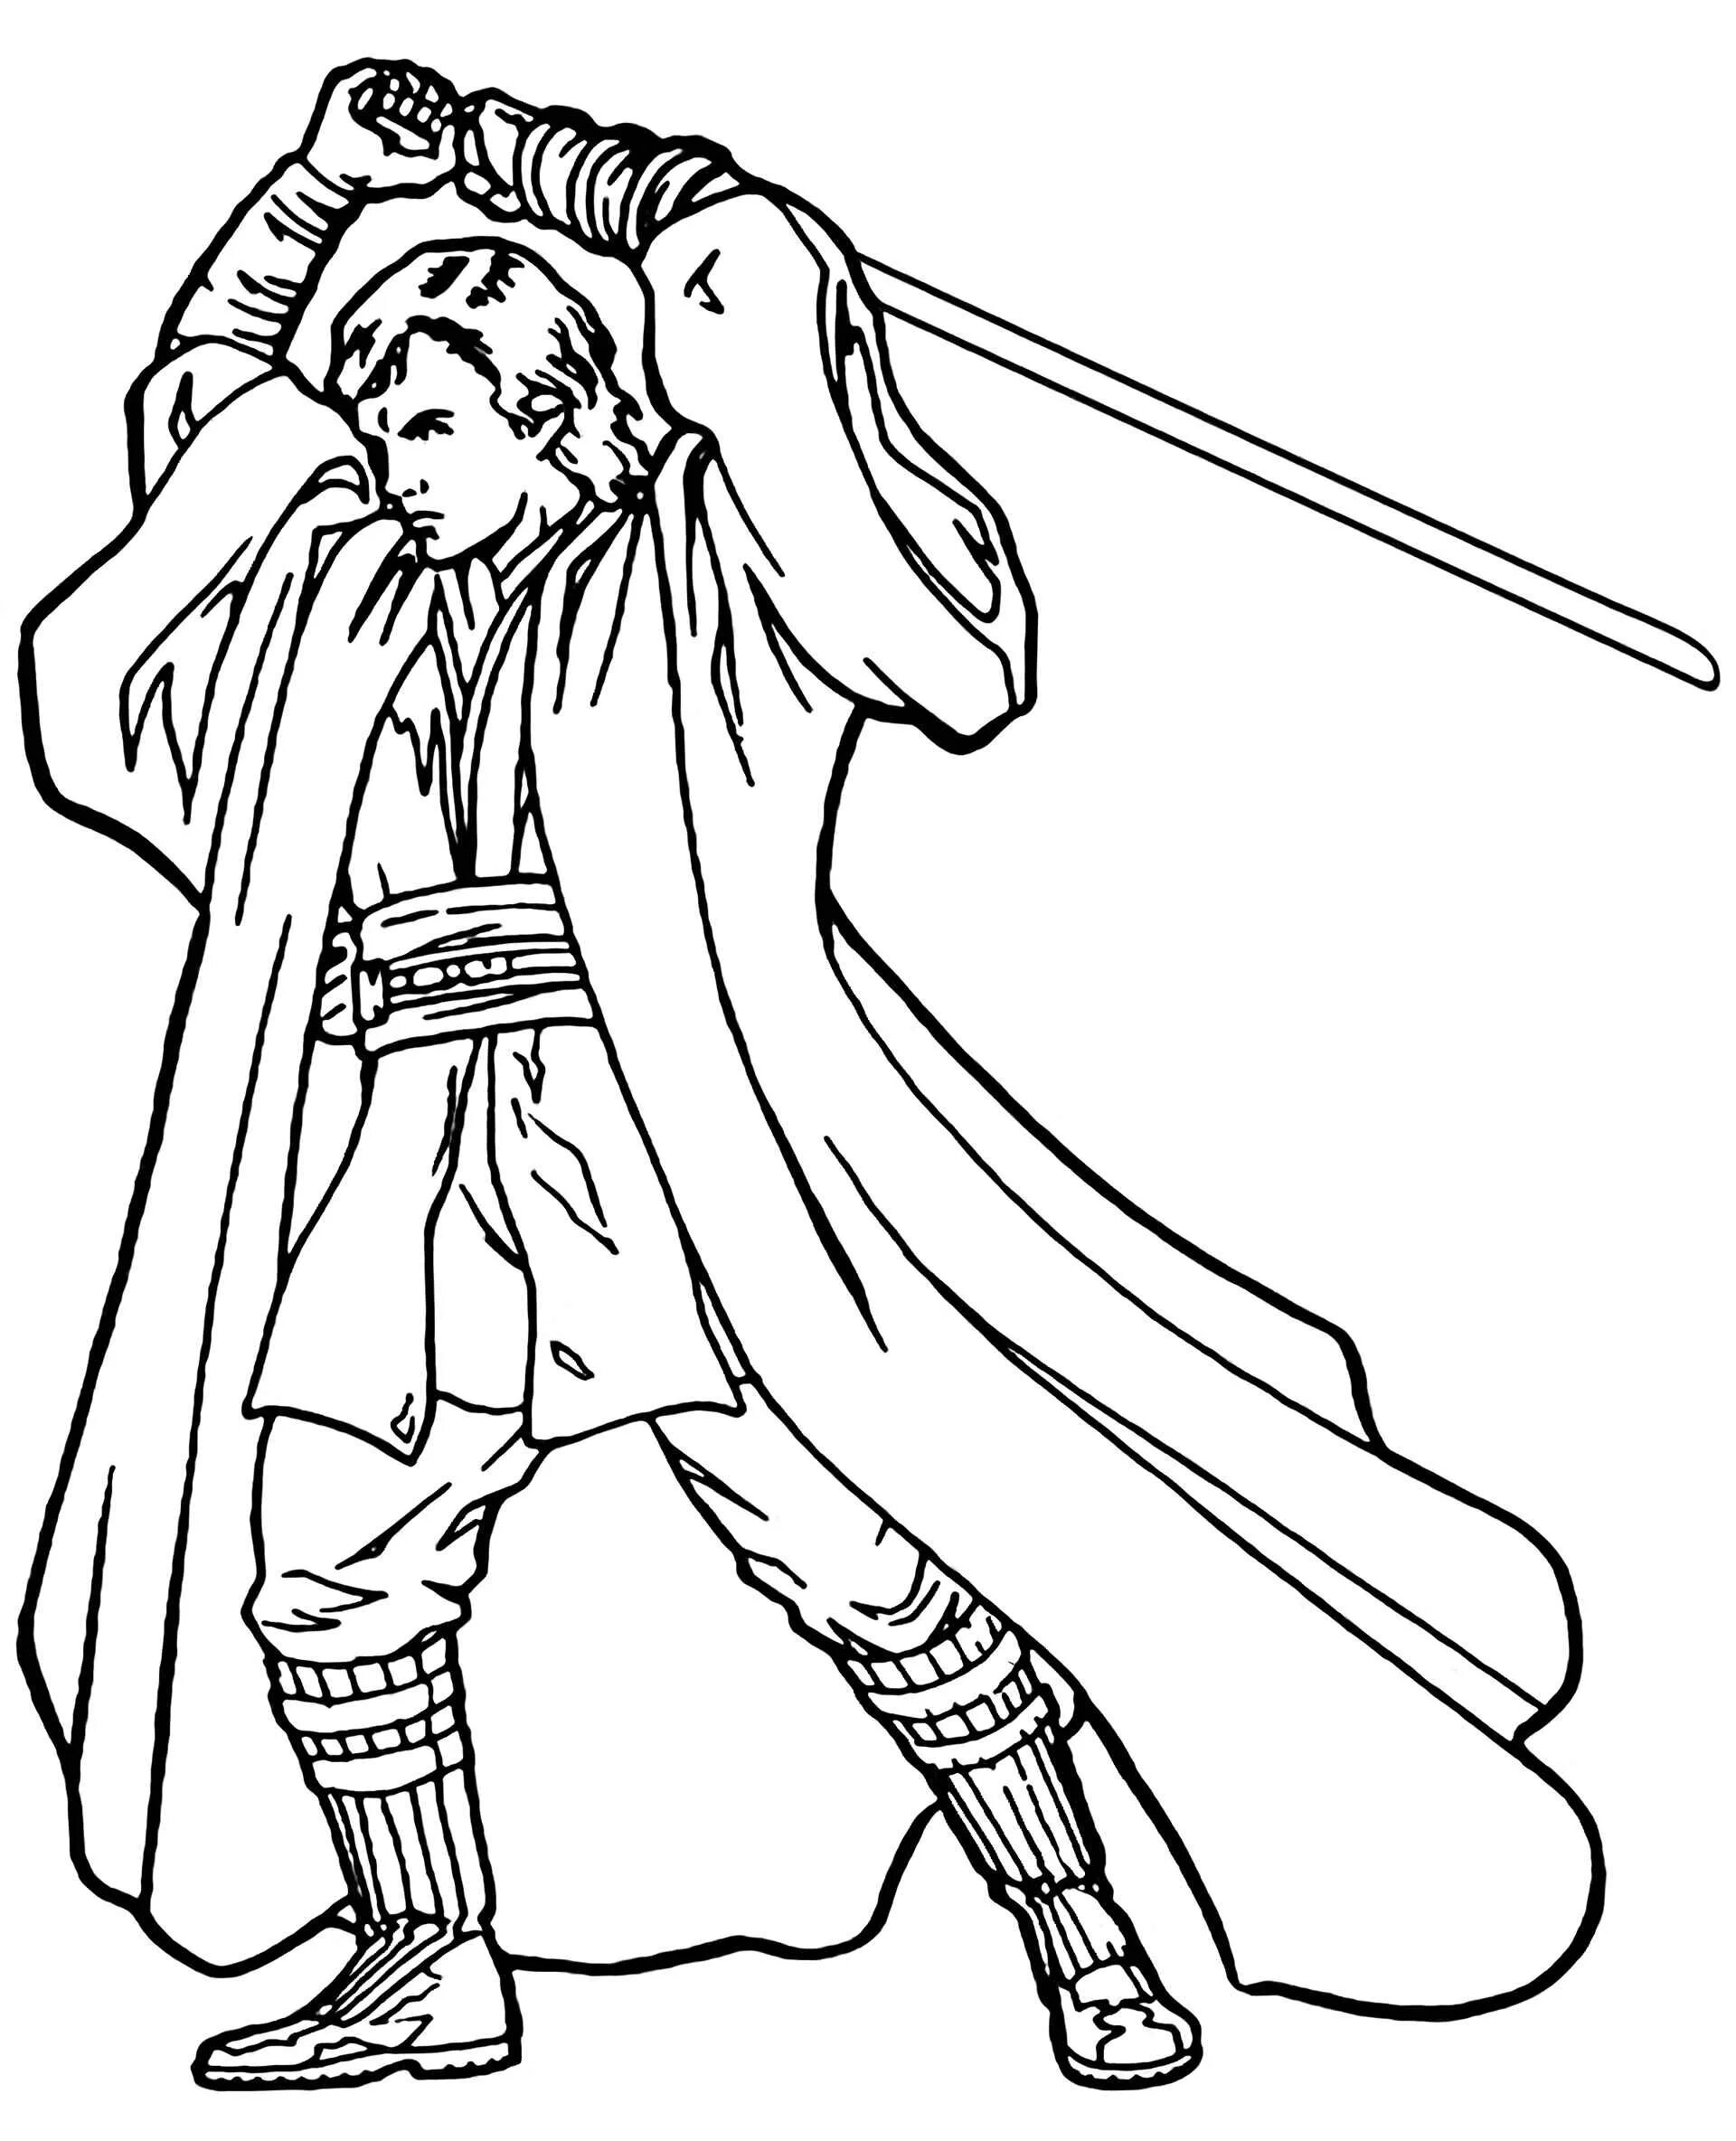 Obi-Wan Kenobi comic coloring book